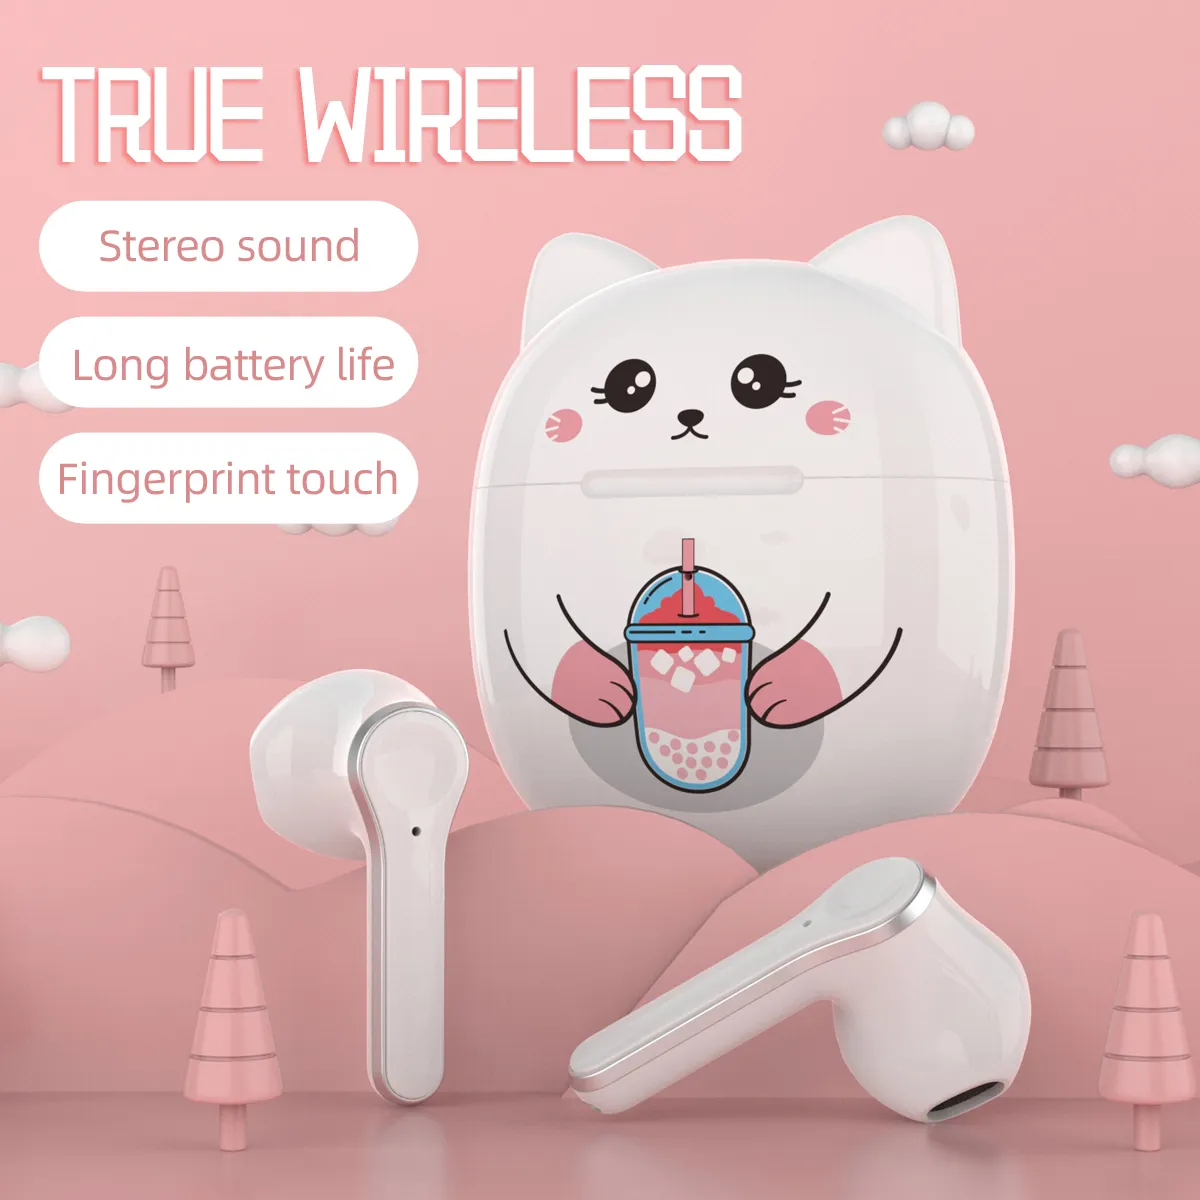 T18a bezprzewodowy zestaw słuchawkowy Bluetooth słodki kociak dwa ucho muzyka zatyczki do uszu słuchawka z etui do ładowania zestaw słuchawkowy do smartfona telefon komórkowy dziewczyny słuchawki